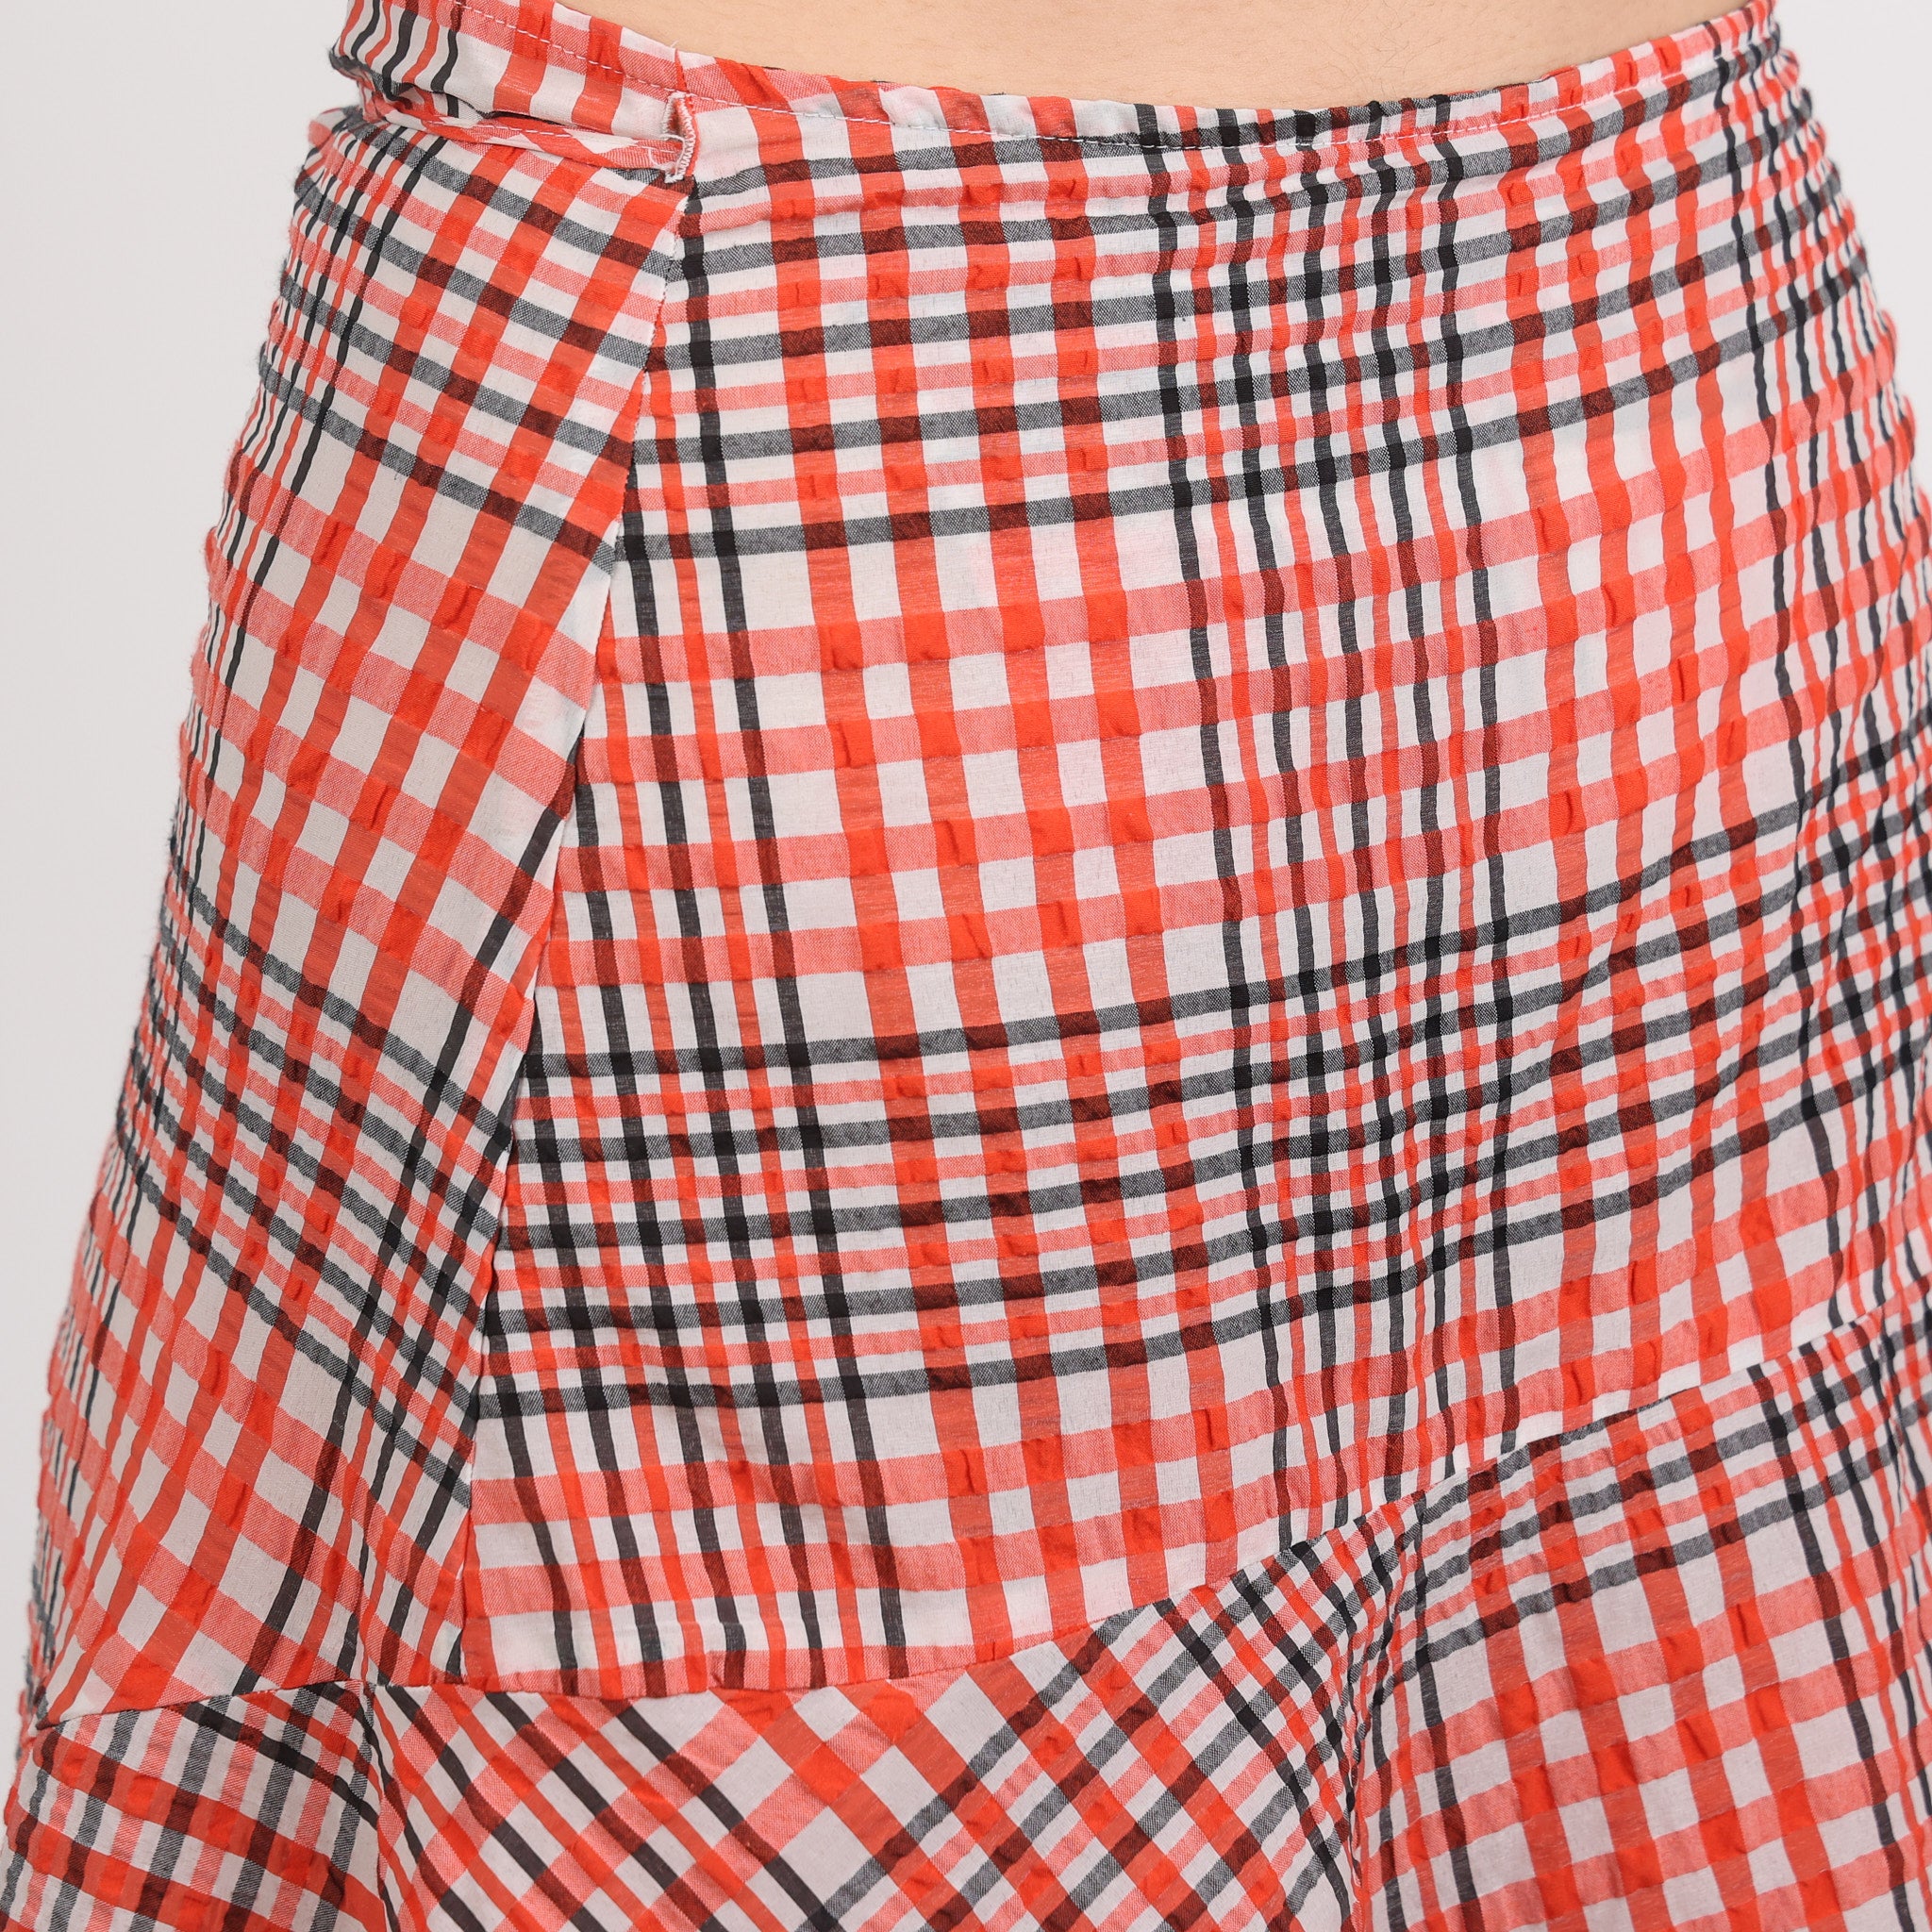 Skirt, UK Size 10